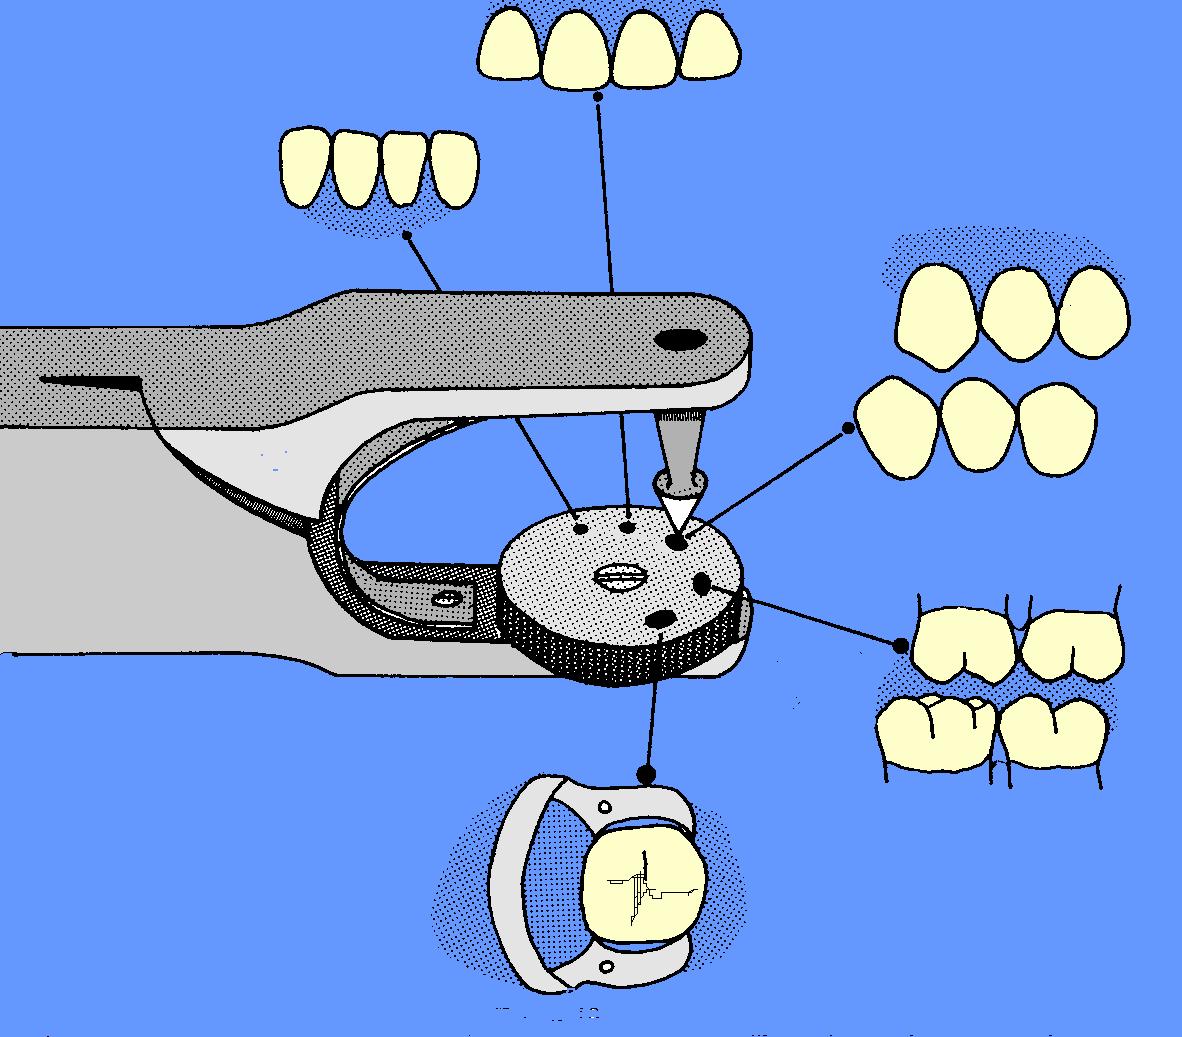 odonto legal: dentistica 1 (ISOLAMENTO DO CAMPO OPERATÓRIO)